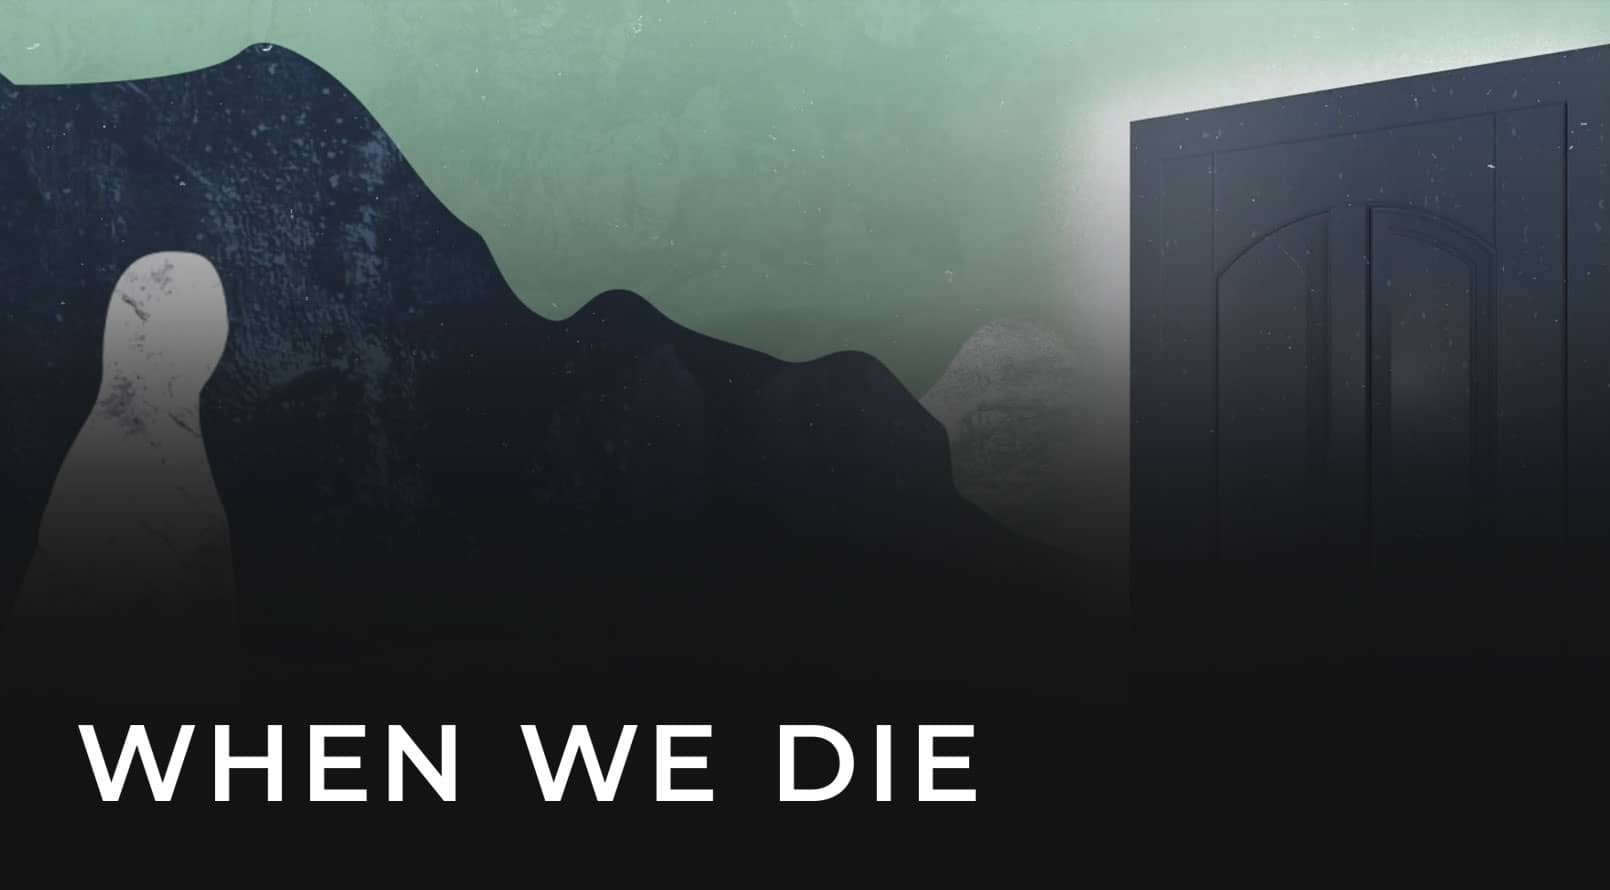 When We Die